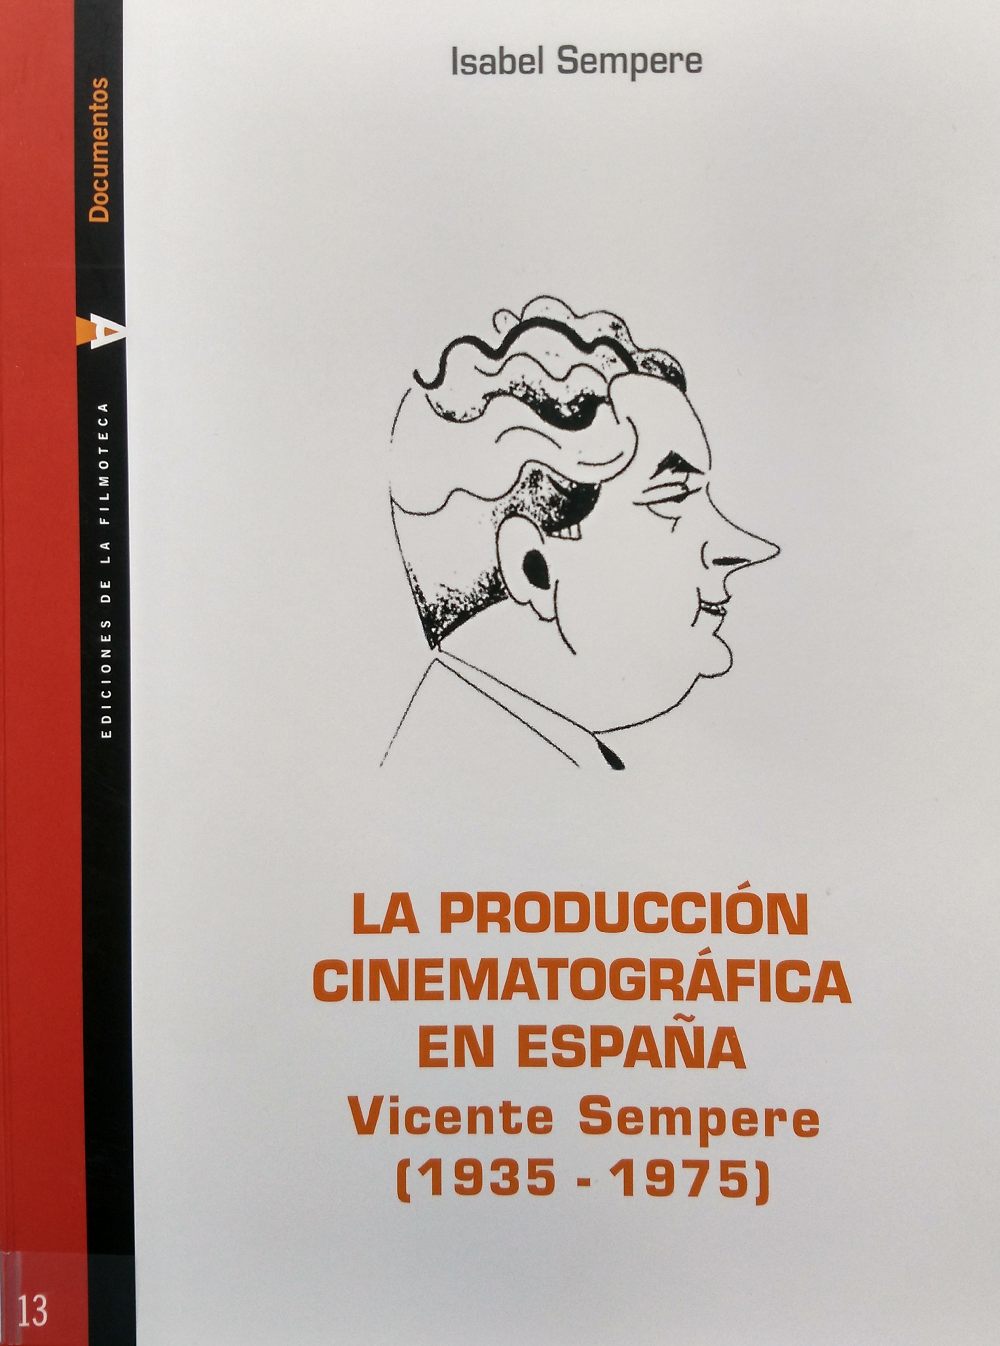 Imagen de portada del libro La producción cinematográfica en España